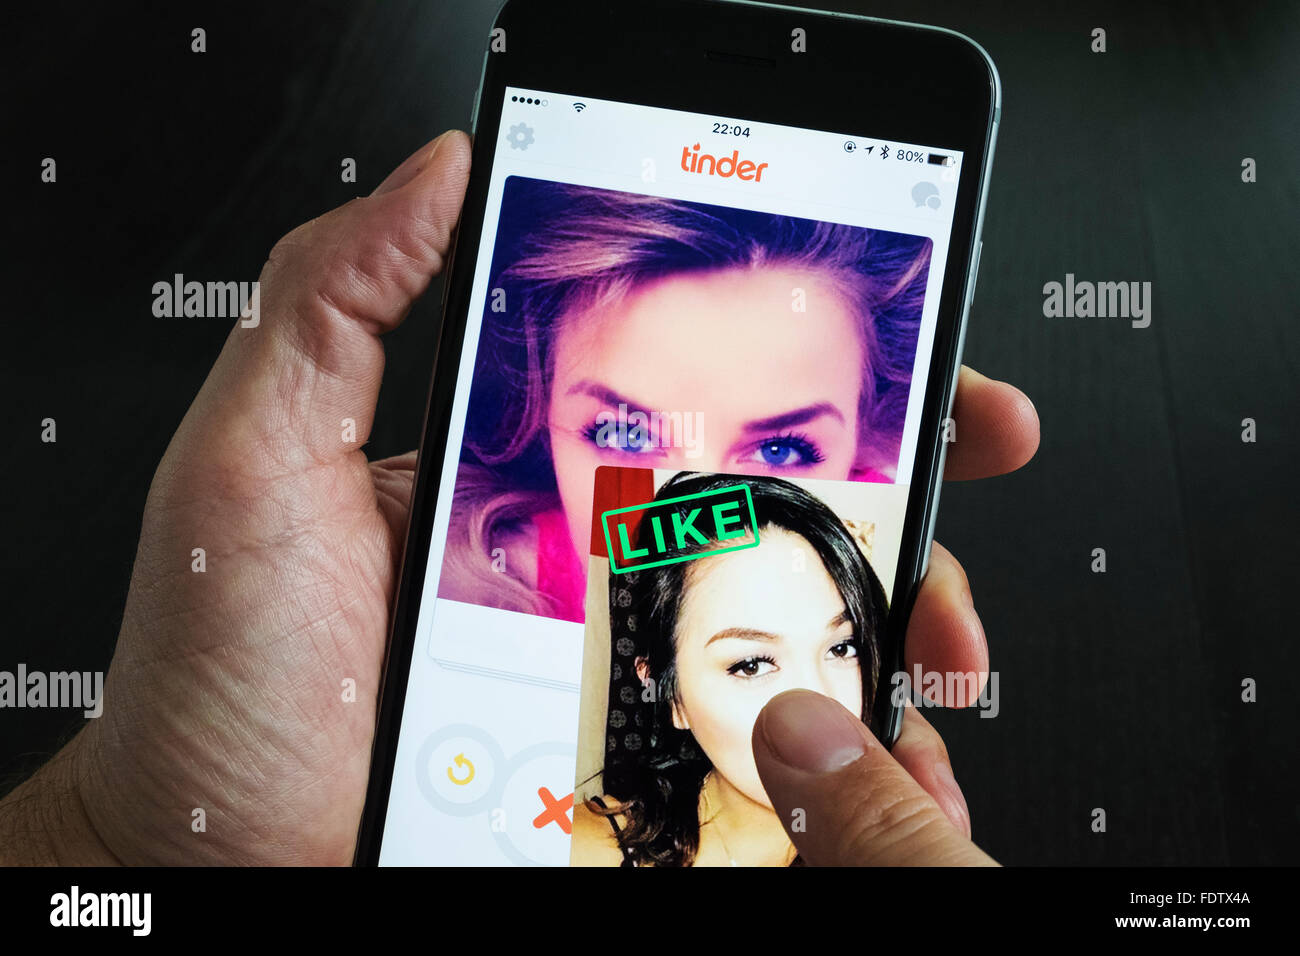 Zunder online-dating-app auf einem iPhone 6 Plus Smartphone Stockfoto